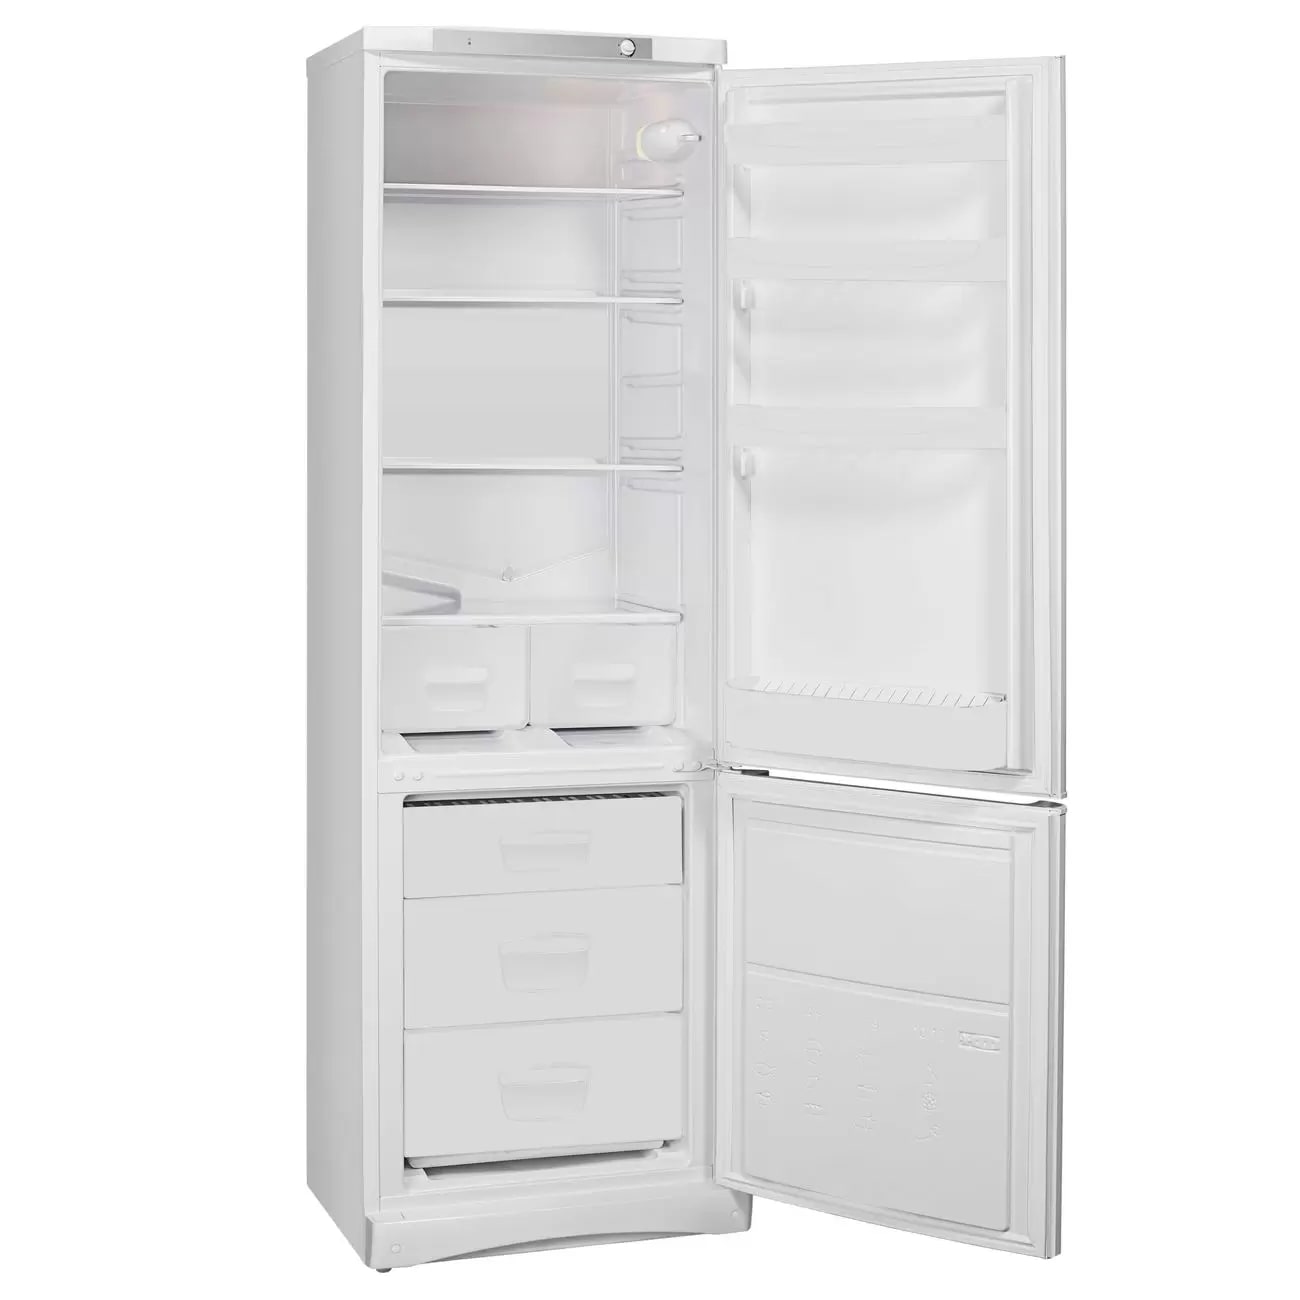 Купить Холодильник Indesit ESP 18 — Фото 2